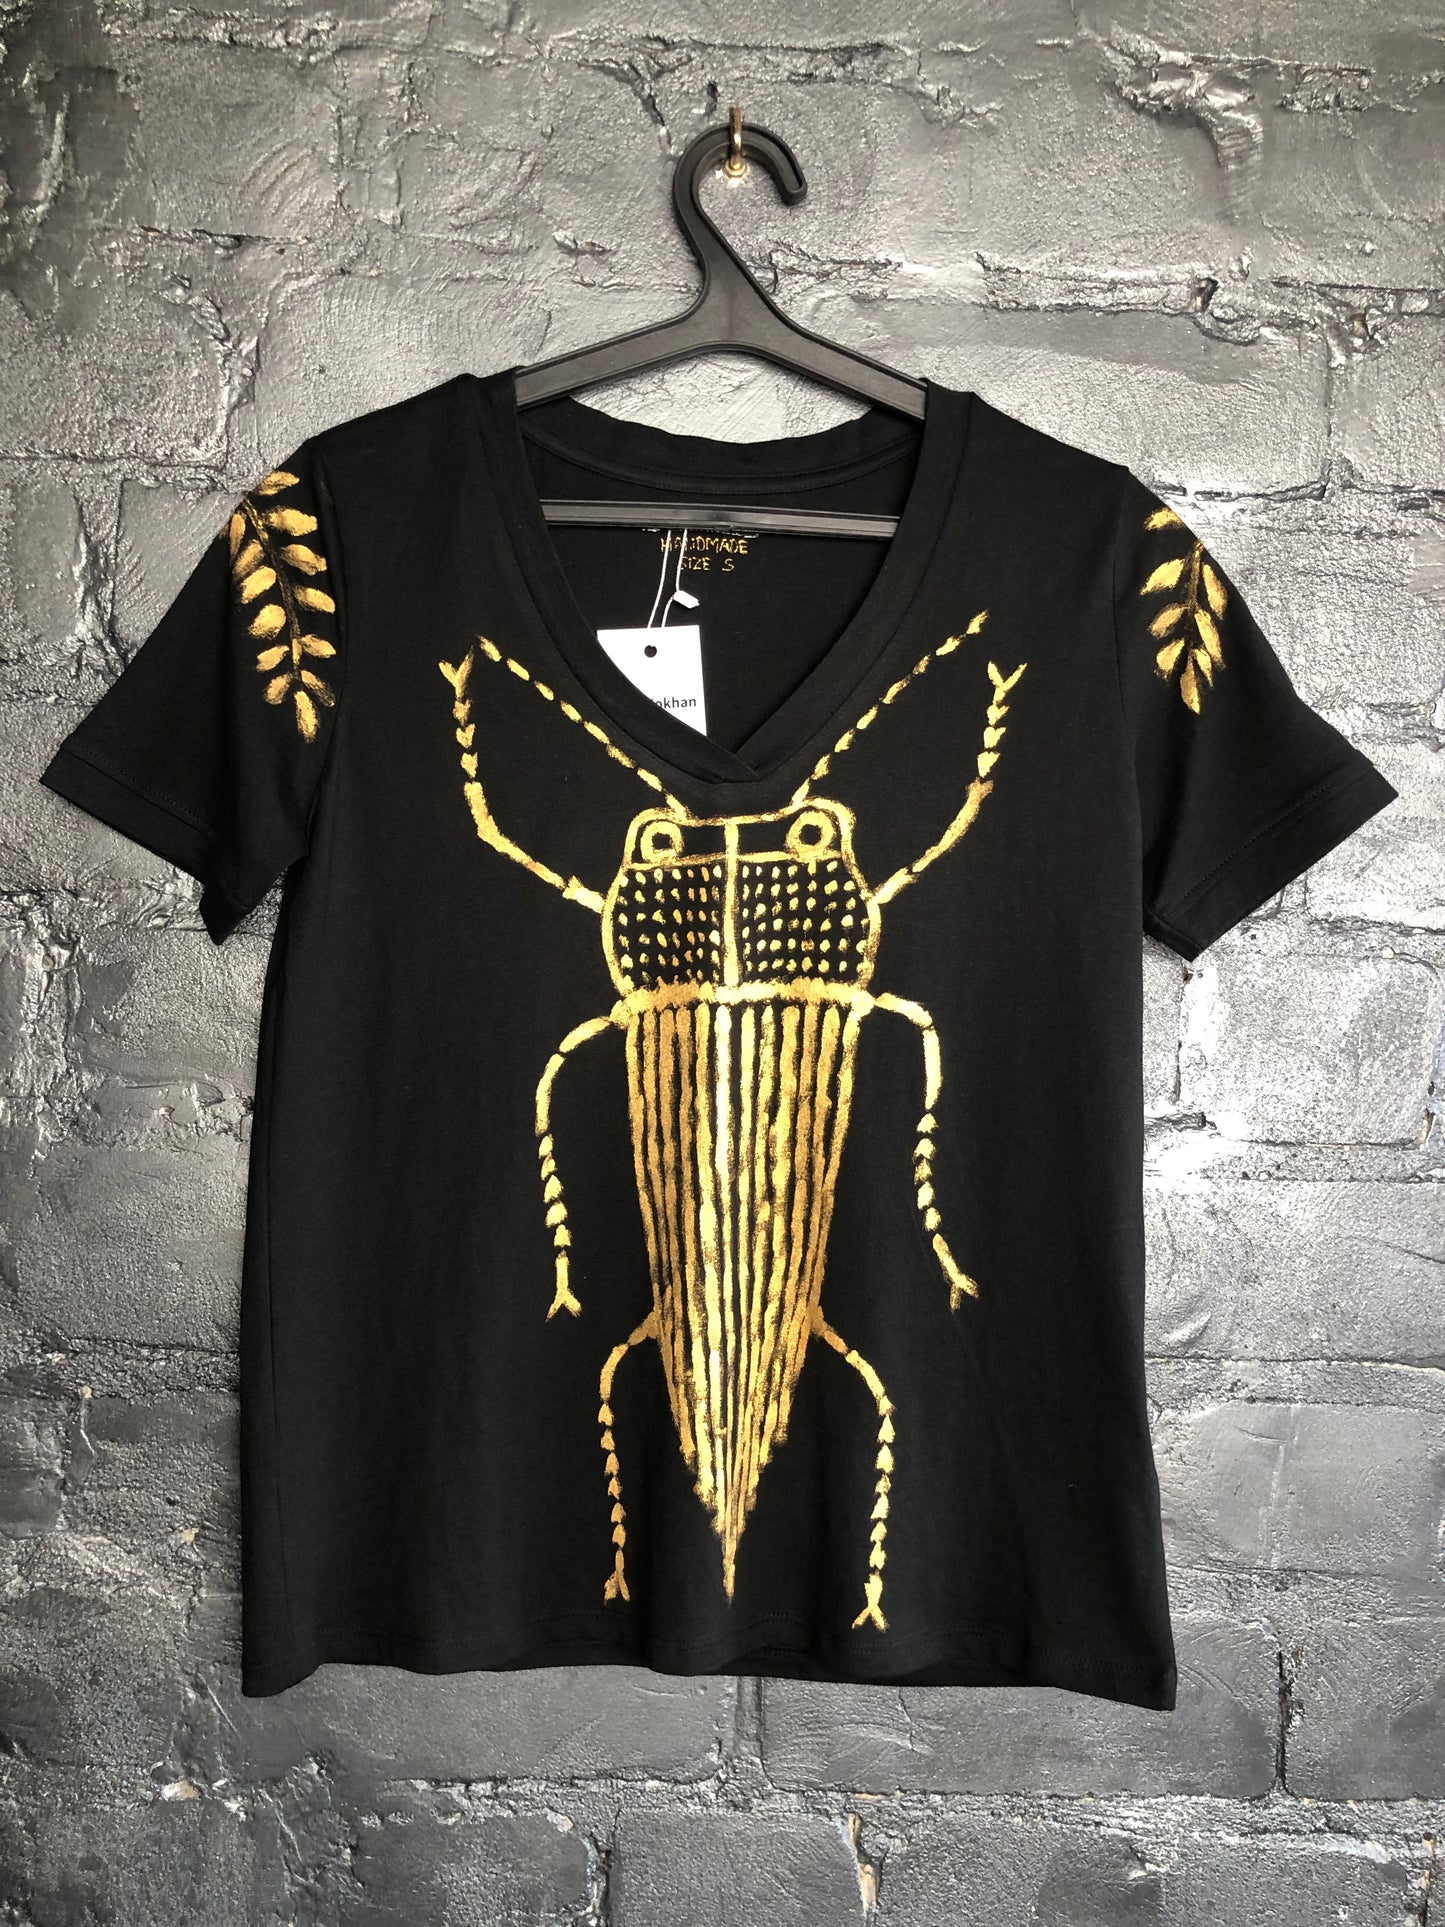 Women's short sleeve t-shirt cockroaches